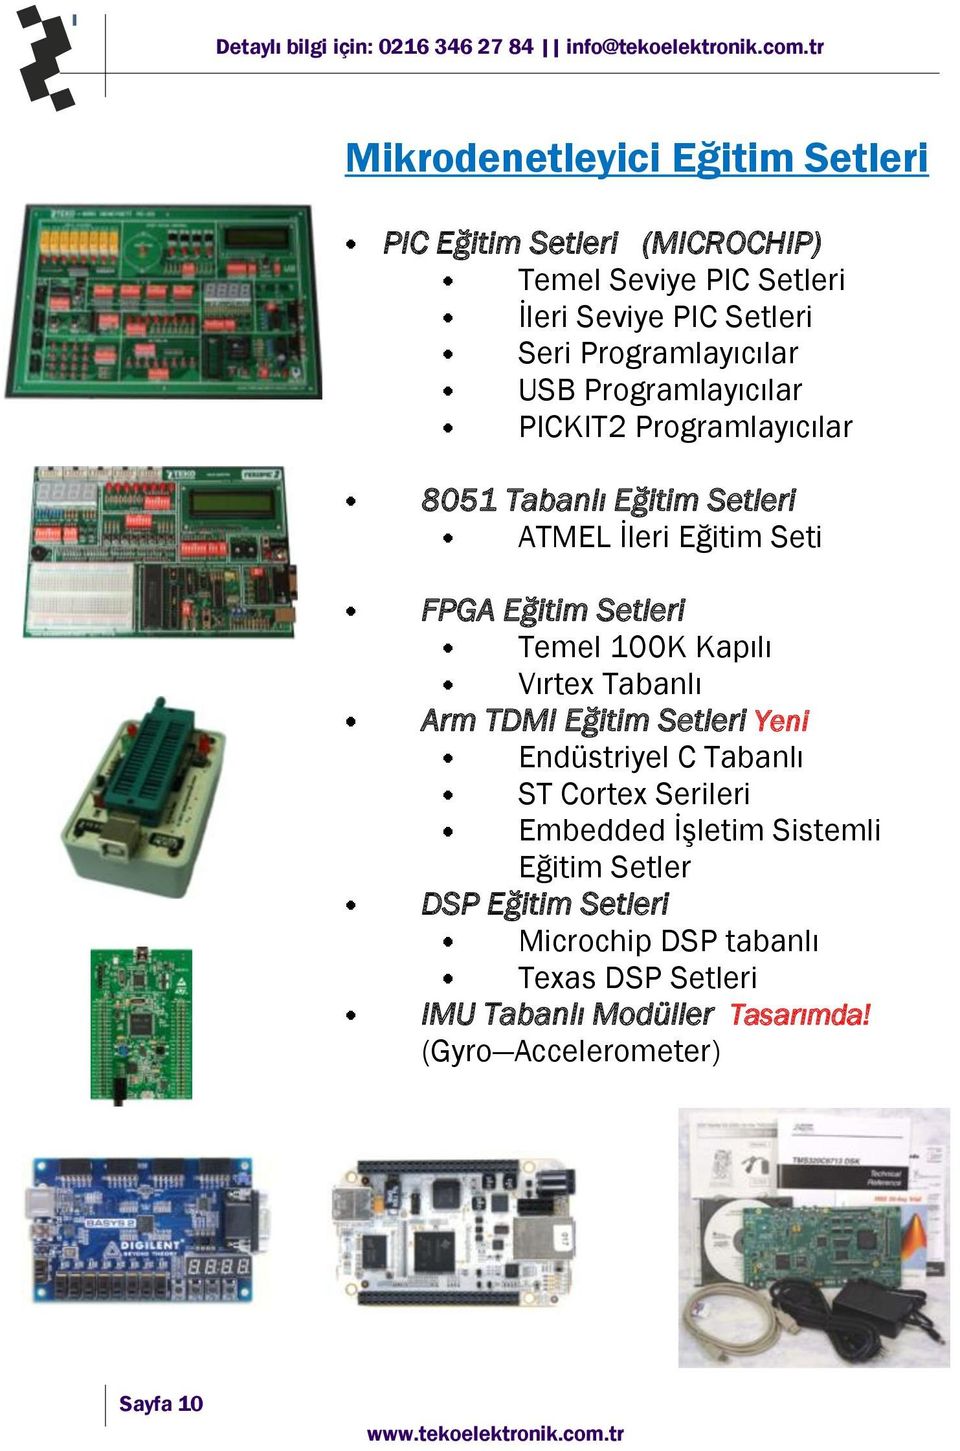 Setleri Temel 100K Kapılı Vırtex Tabanlı Arm TDMI Eğitim Setleri Yeni Endüstriyel C Tabanlı ST Cortex Serileri Embedded İşletim